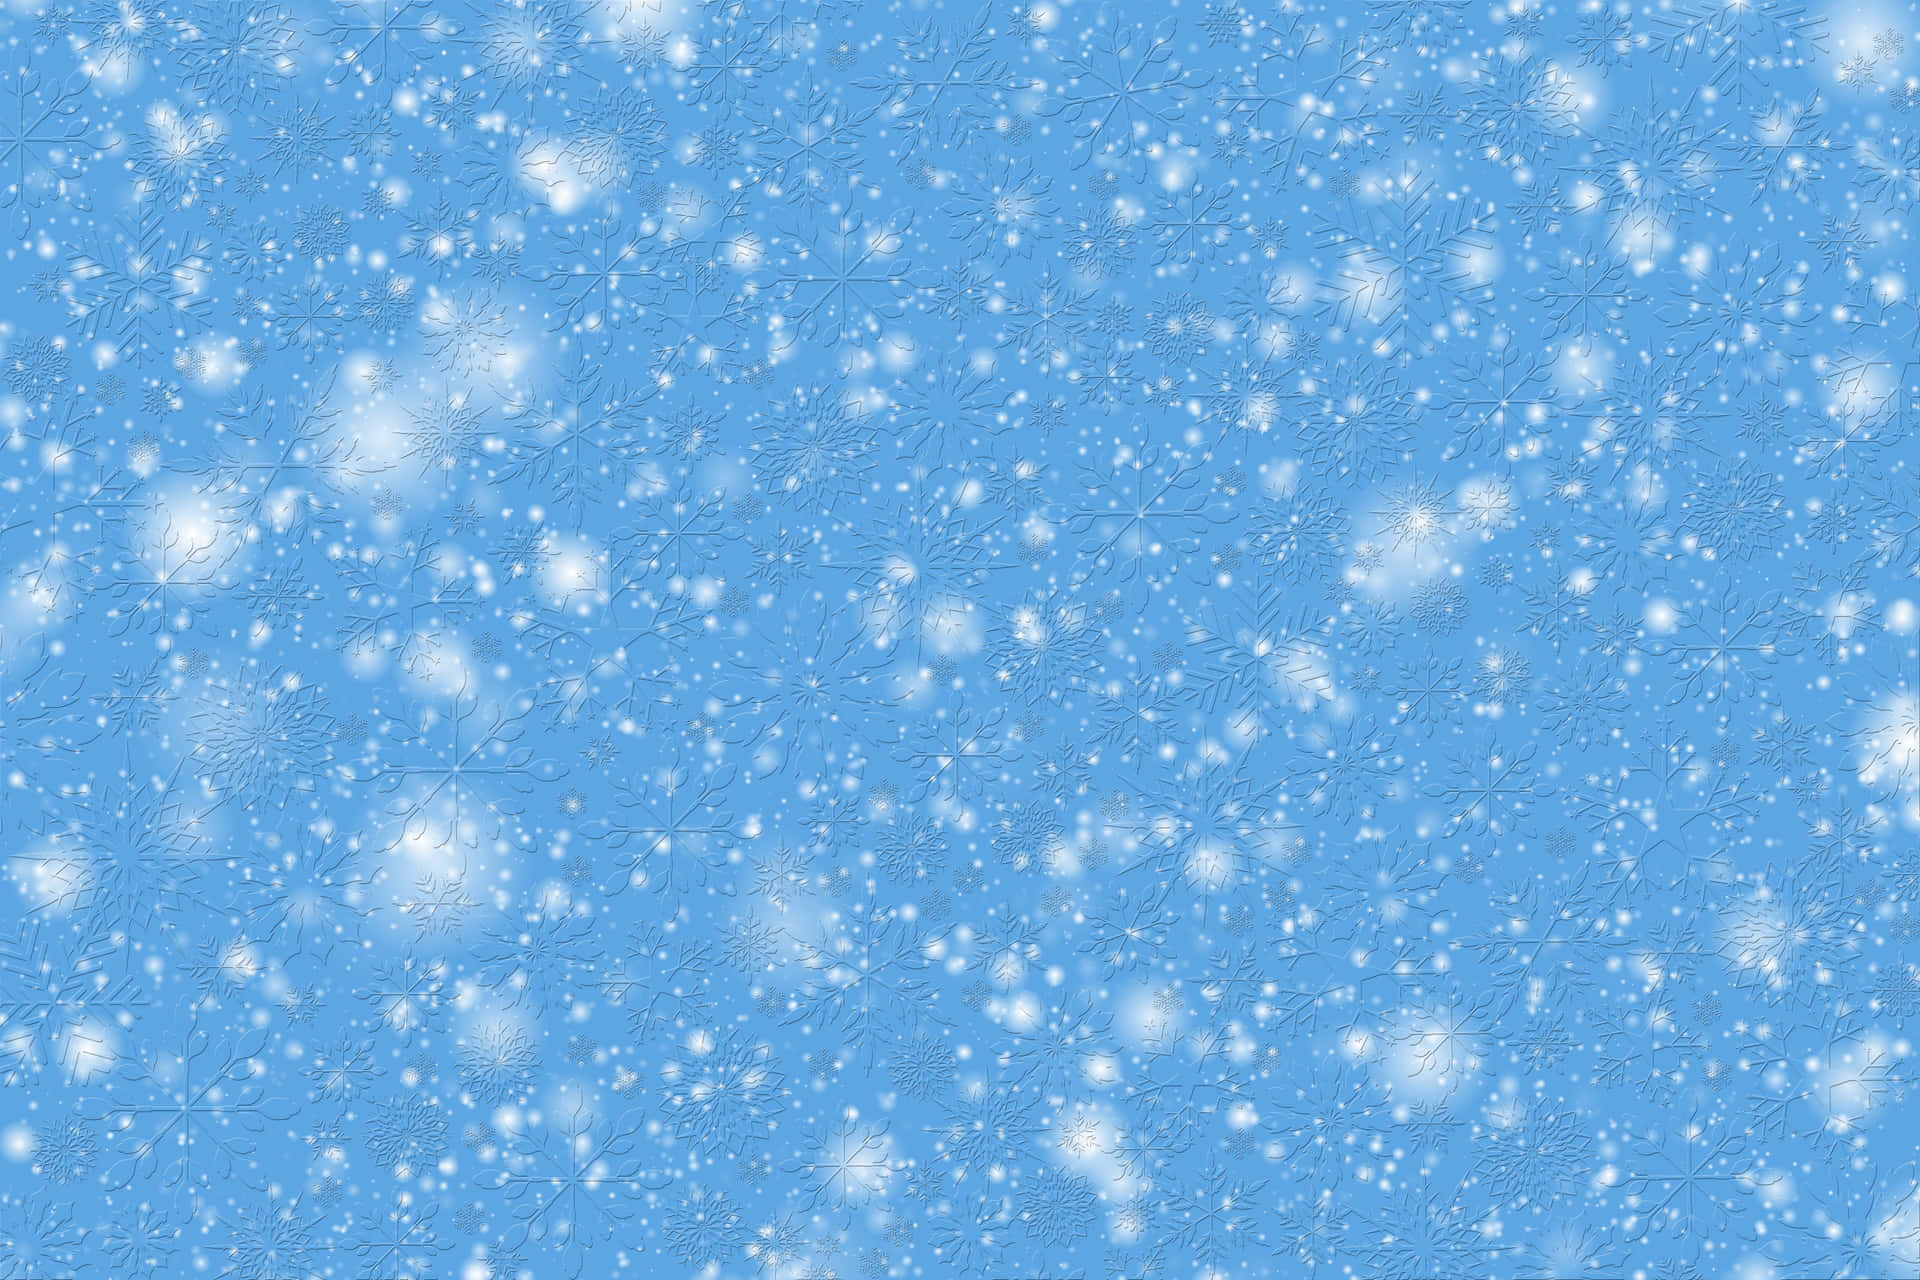 Njutav Vinterns Snöfall Och Dess Skönhet På Din Dator- Eller Mobilskärm! Wallpaper